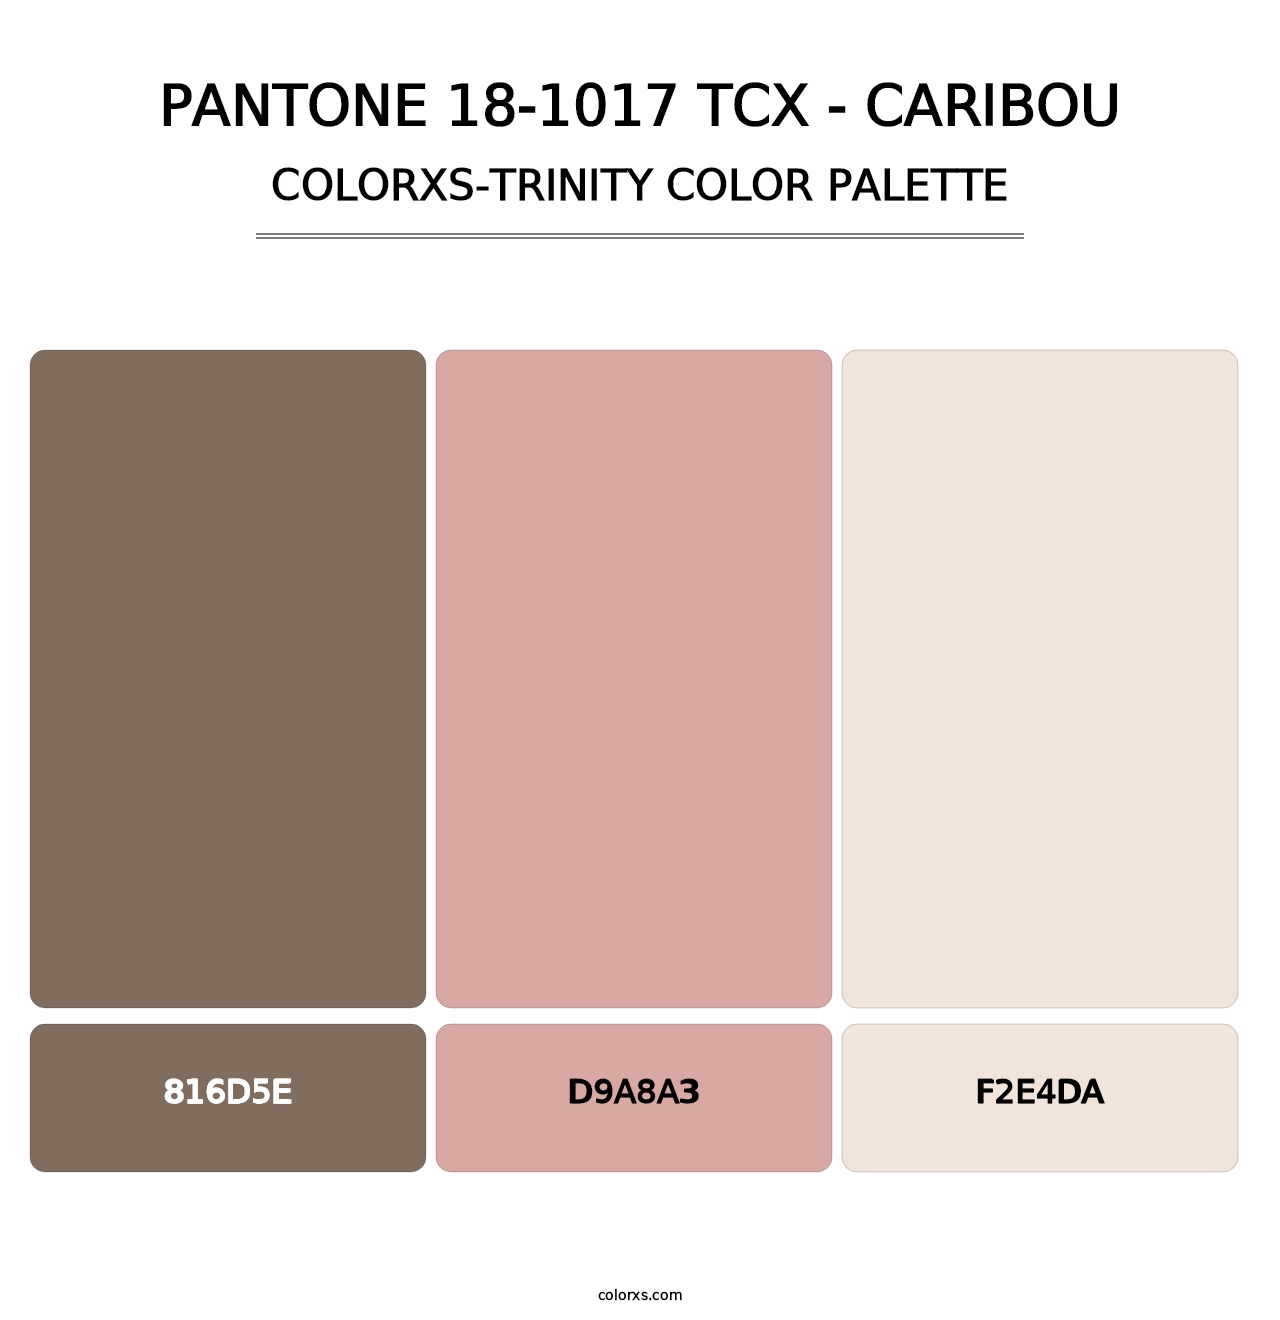 PANTONE 18-1017 TCX - Caribou - Colorxs Trinity Palette